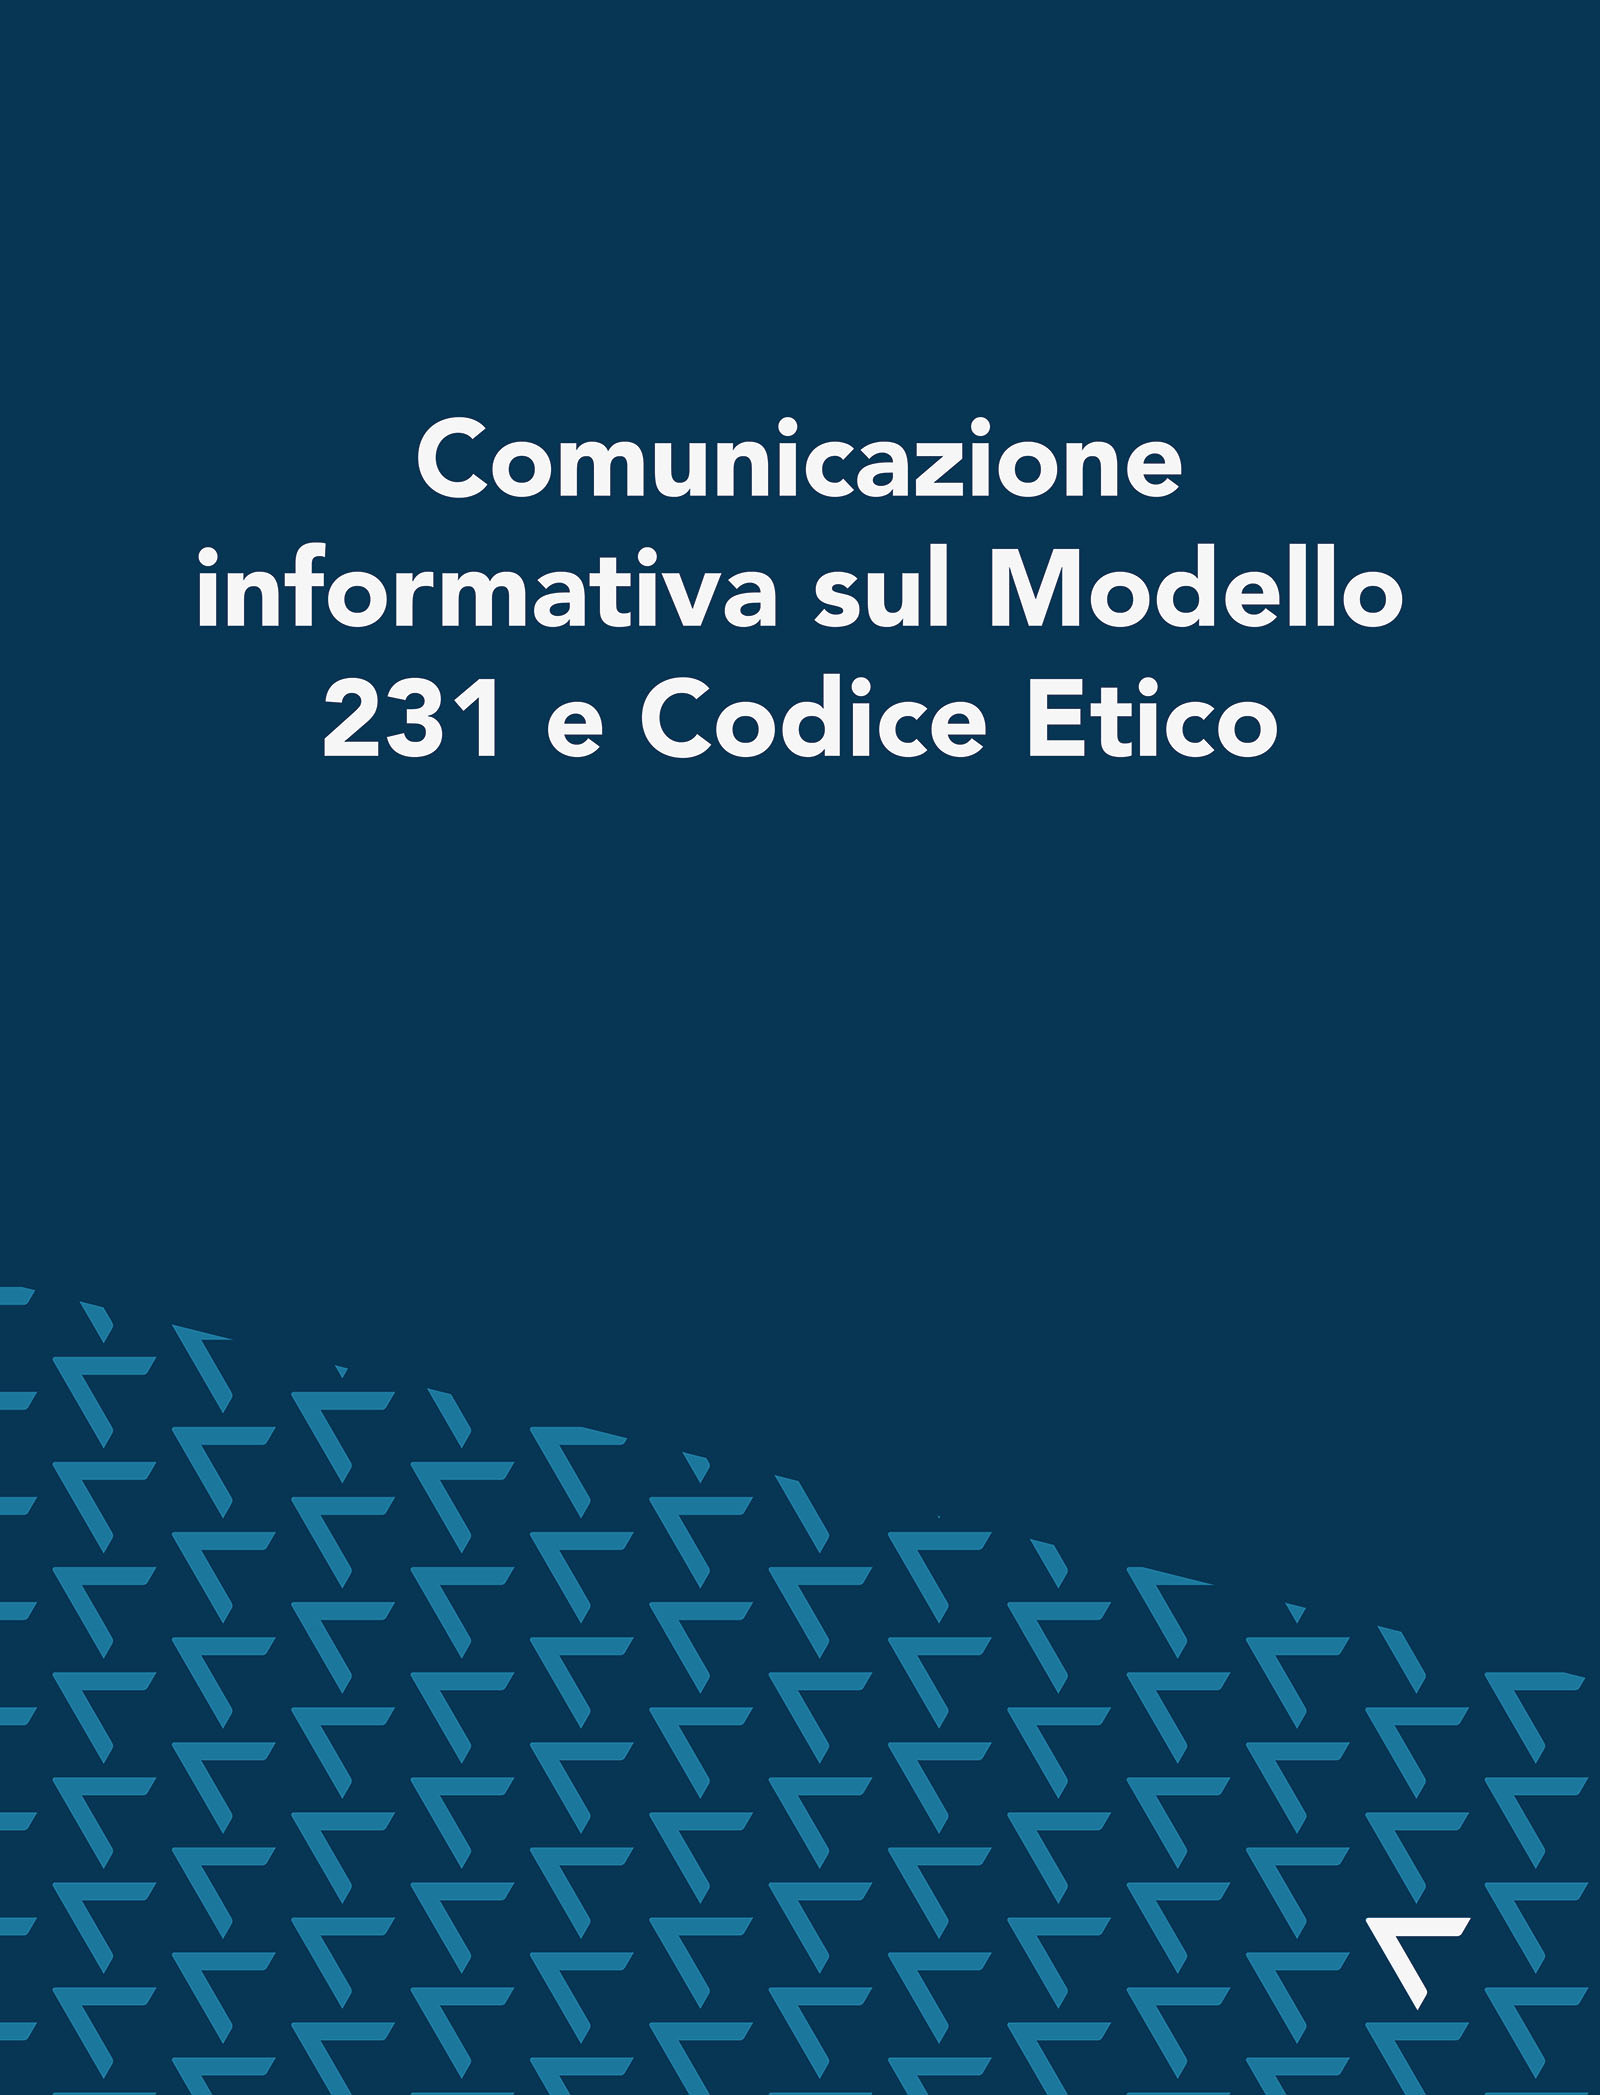 Comunicazione informatica codice etico